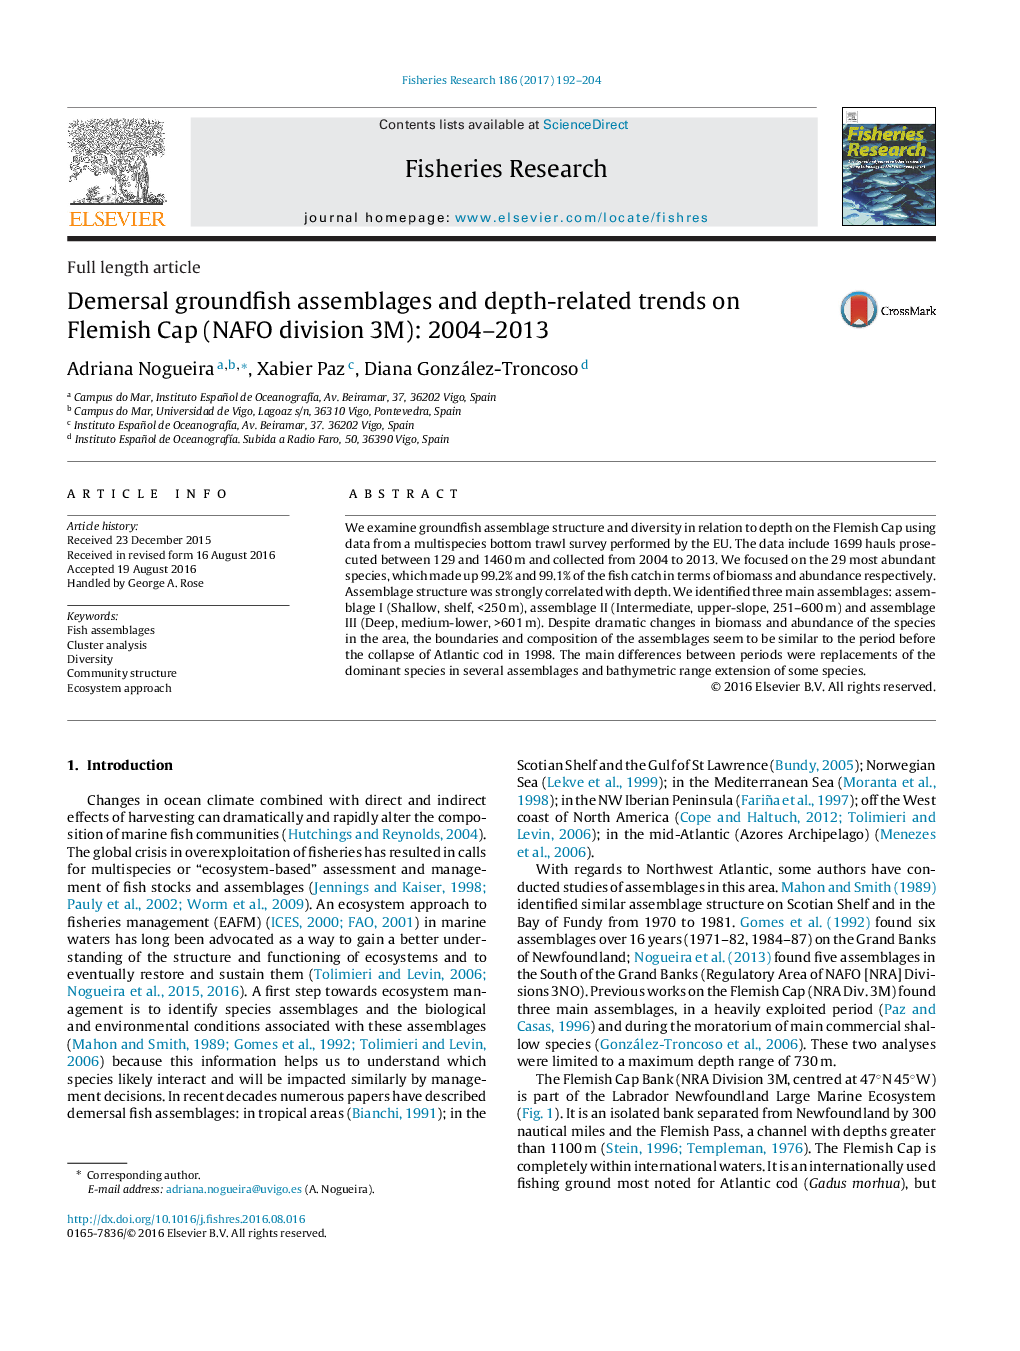 مجموعه‌های Demersal groundfish و روند مربوط به عمق در کاپ فلاندرز(NAFO تقسیم 3M): 2004-2013